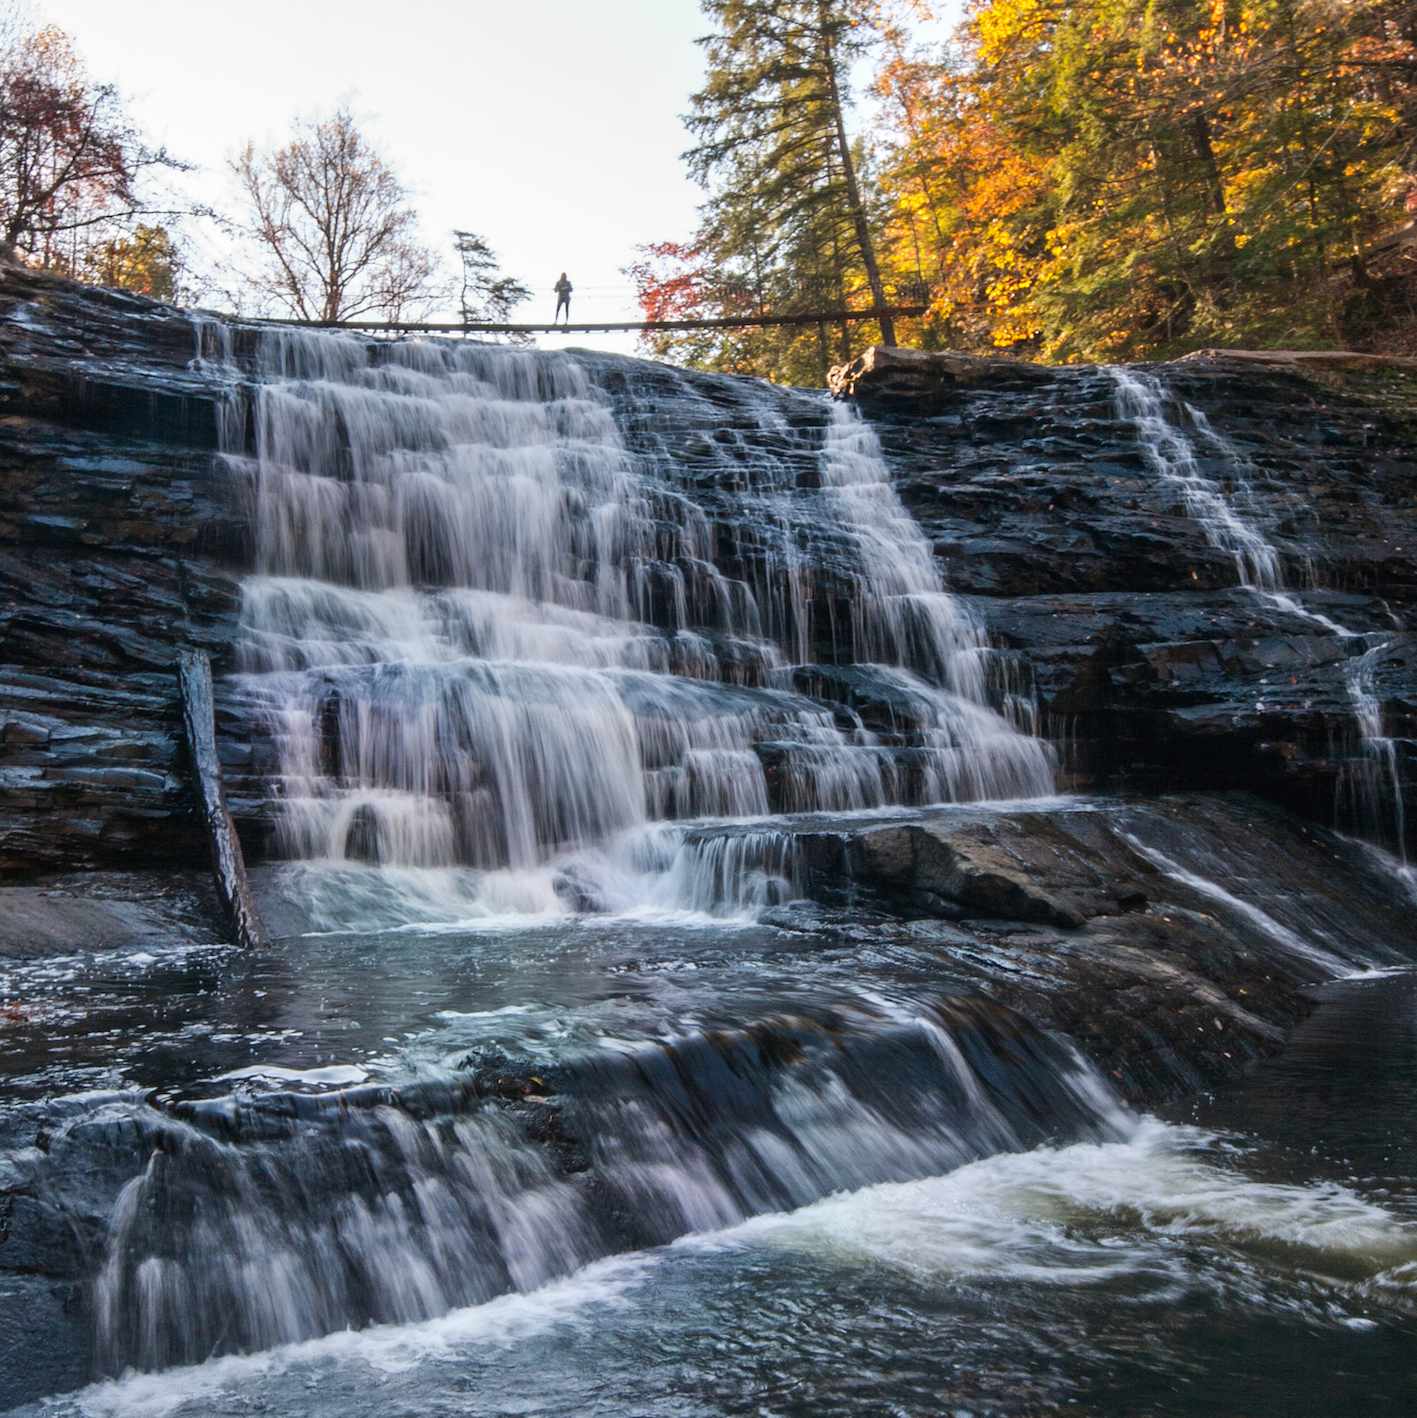 Fall in love with Fall Creek Falls